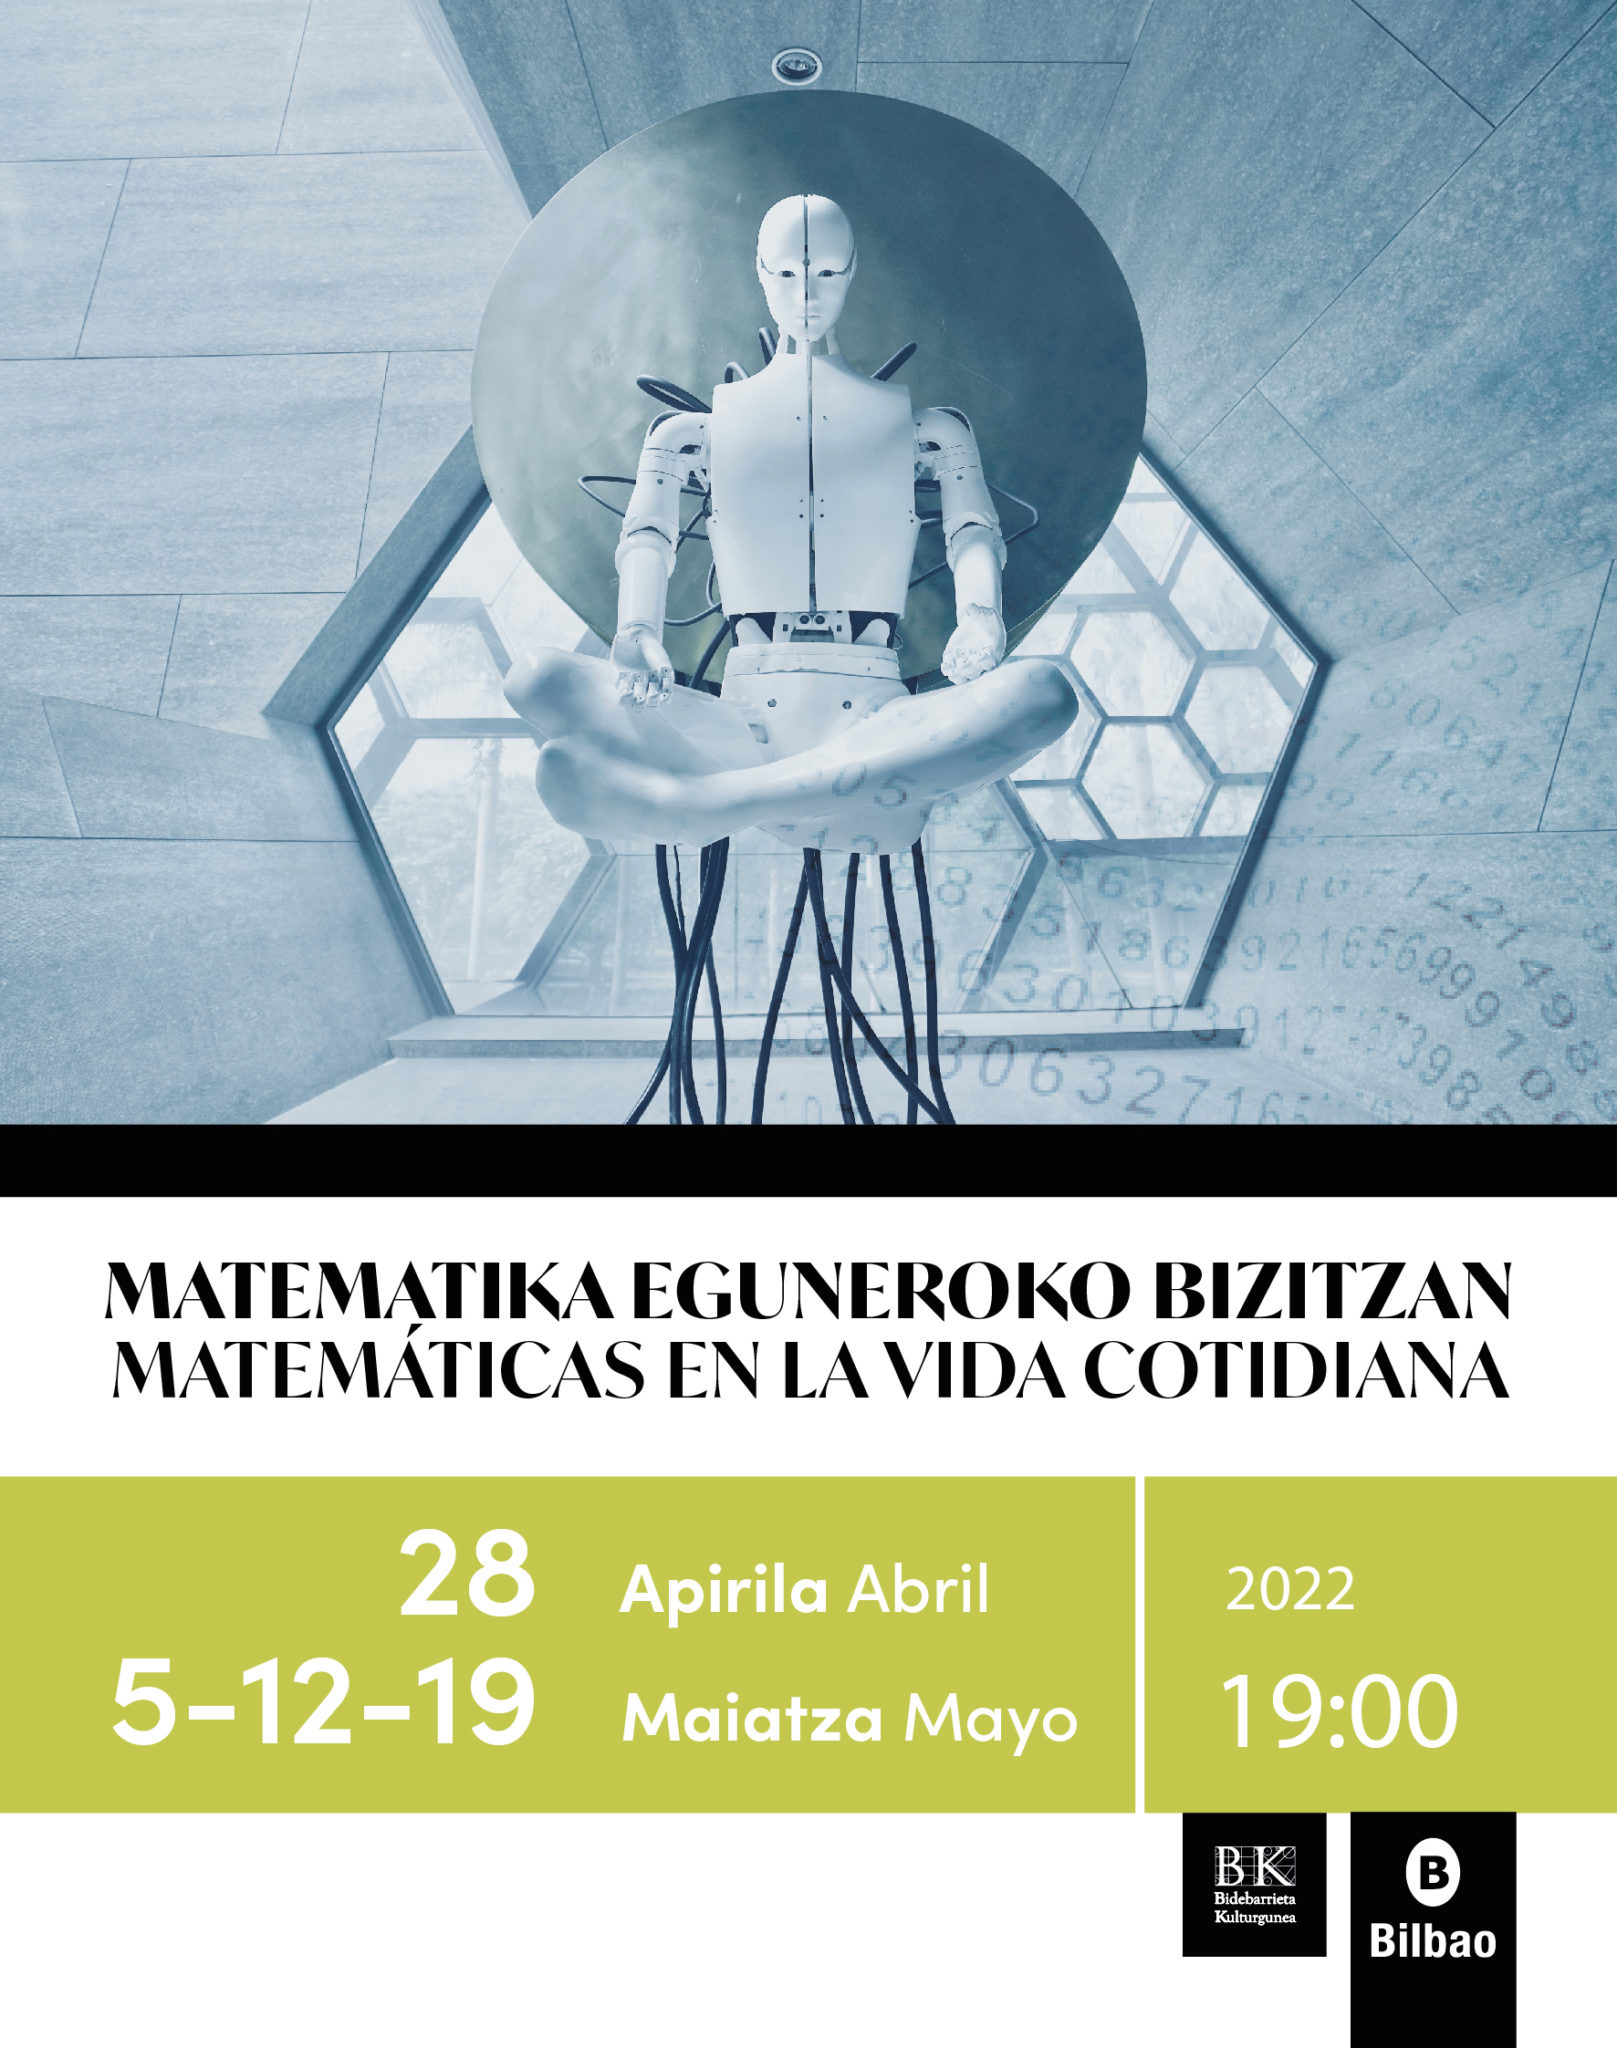 ciclo de conferencias Matematika eguneroko bizitzan / Matemáticas en la vida cotidiana  2022